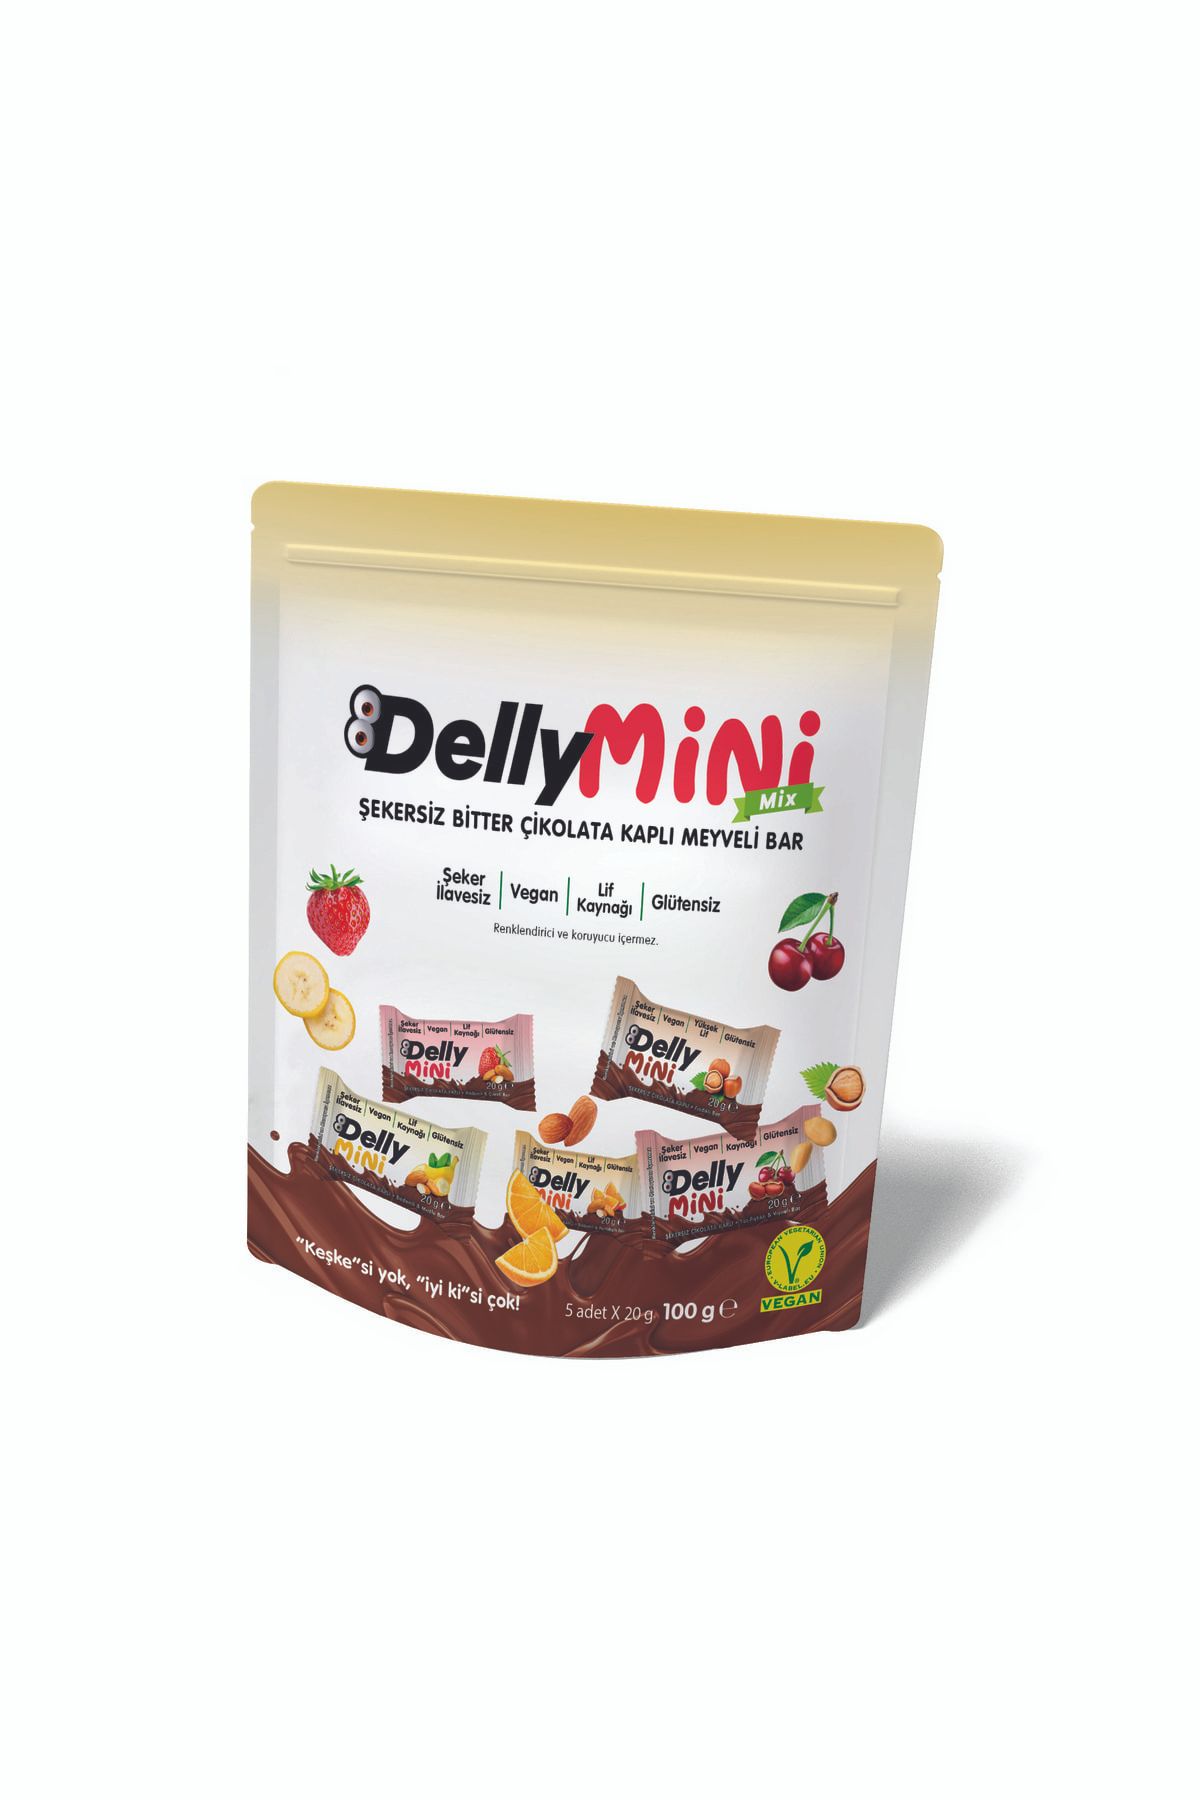 Delly Şeker Ilavesiz Çikolata Kaplı Bar - Mini Mix [ 5 X 5 X 20g ] - 500 G